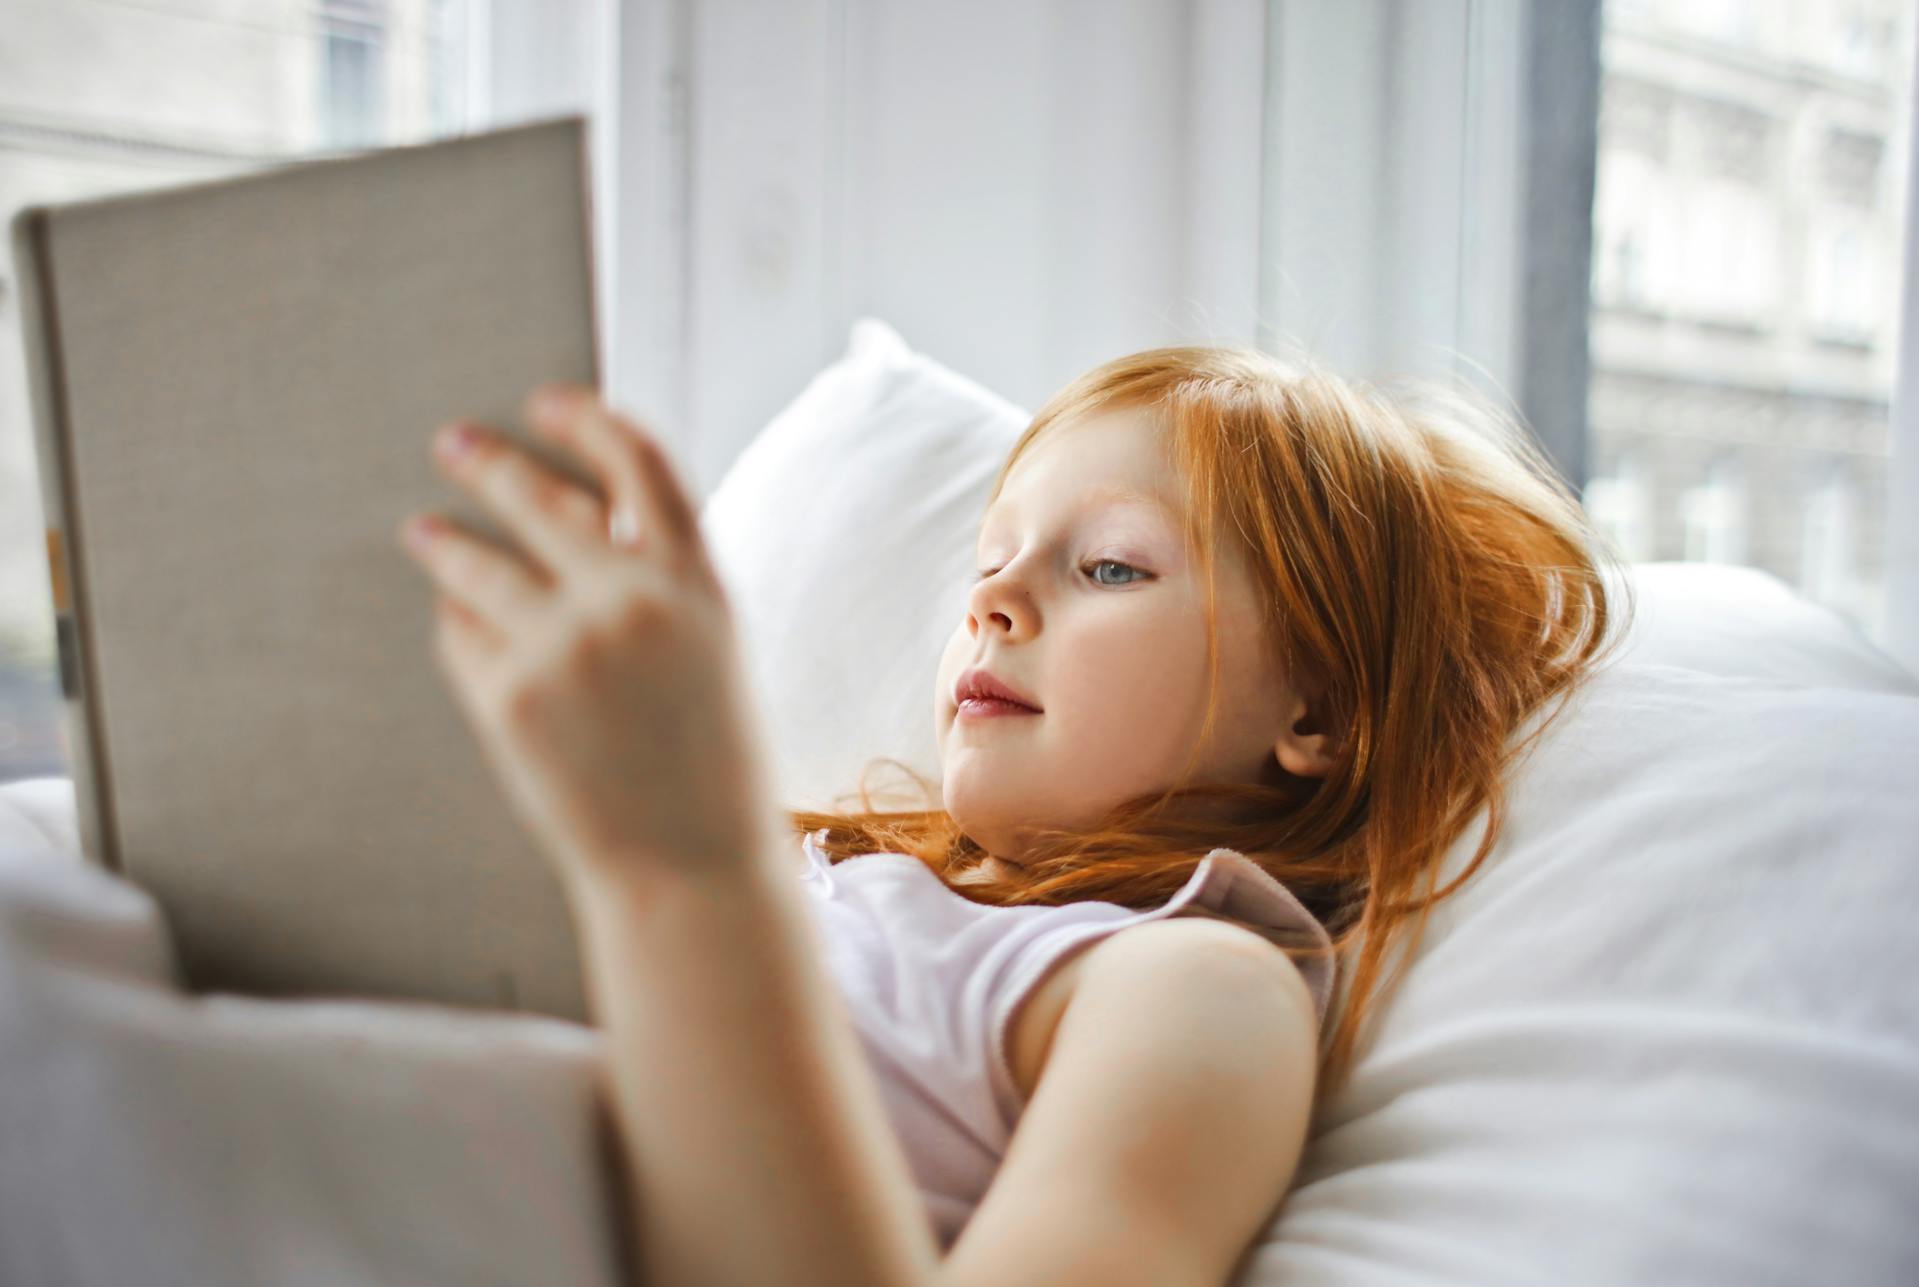 Une petite fille tenant un livre dans son lit | Source : Pexels